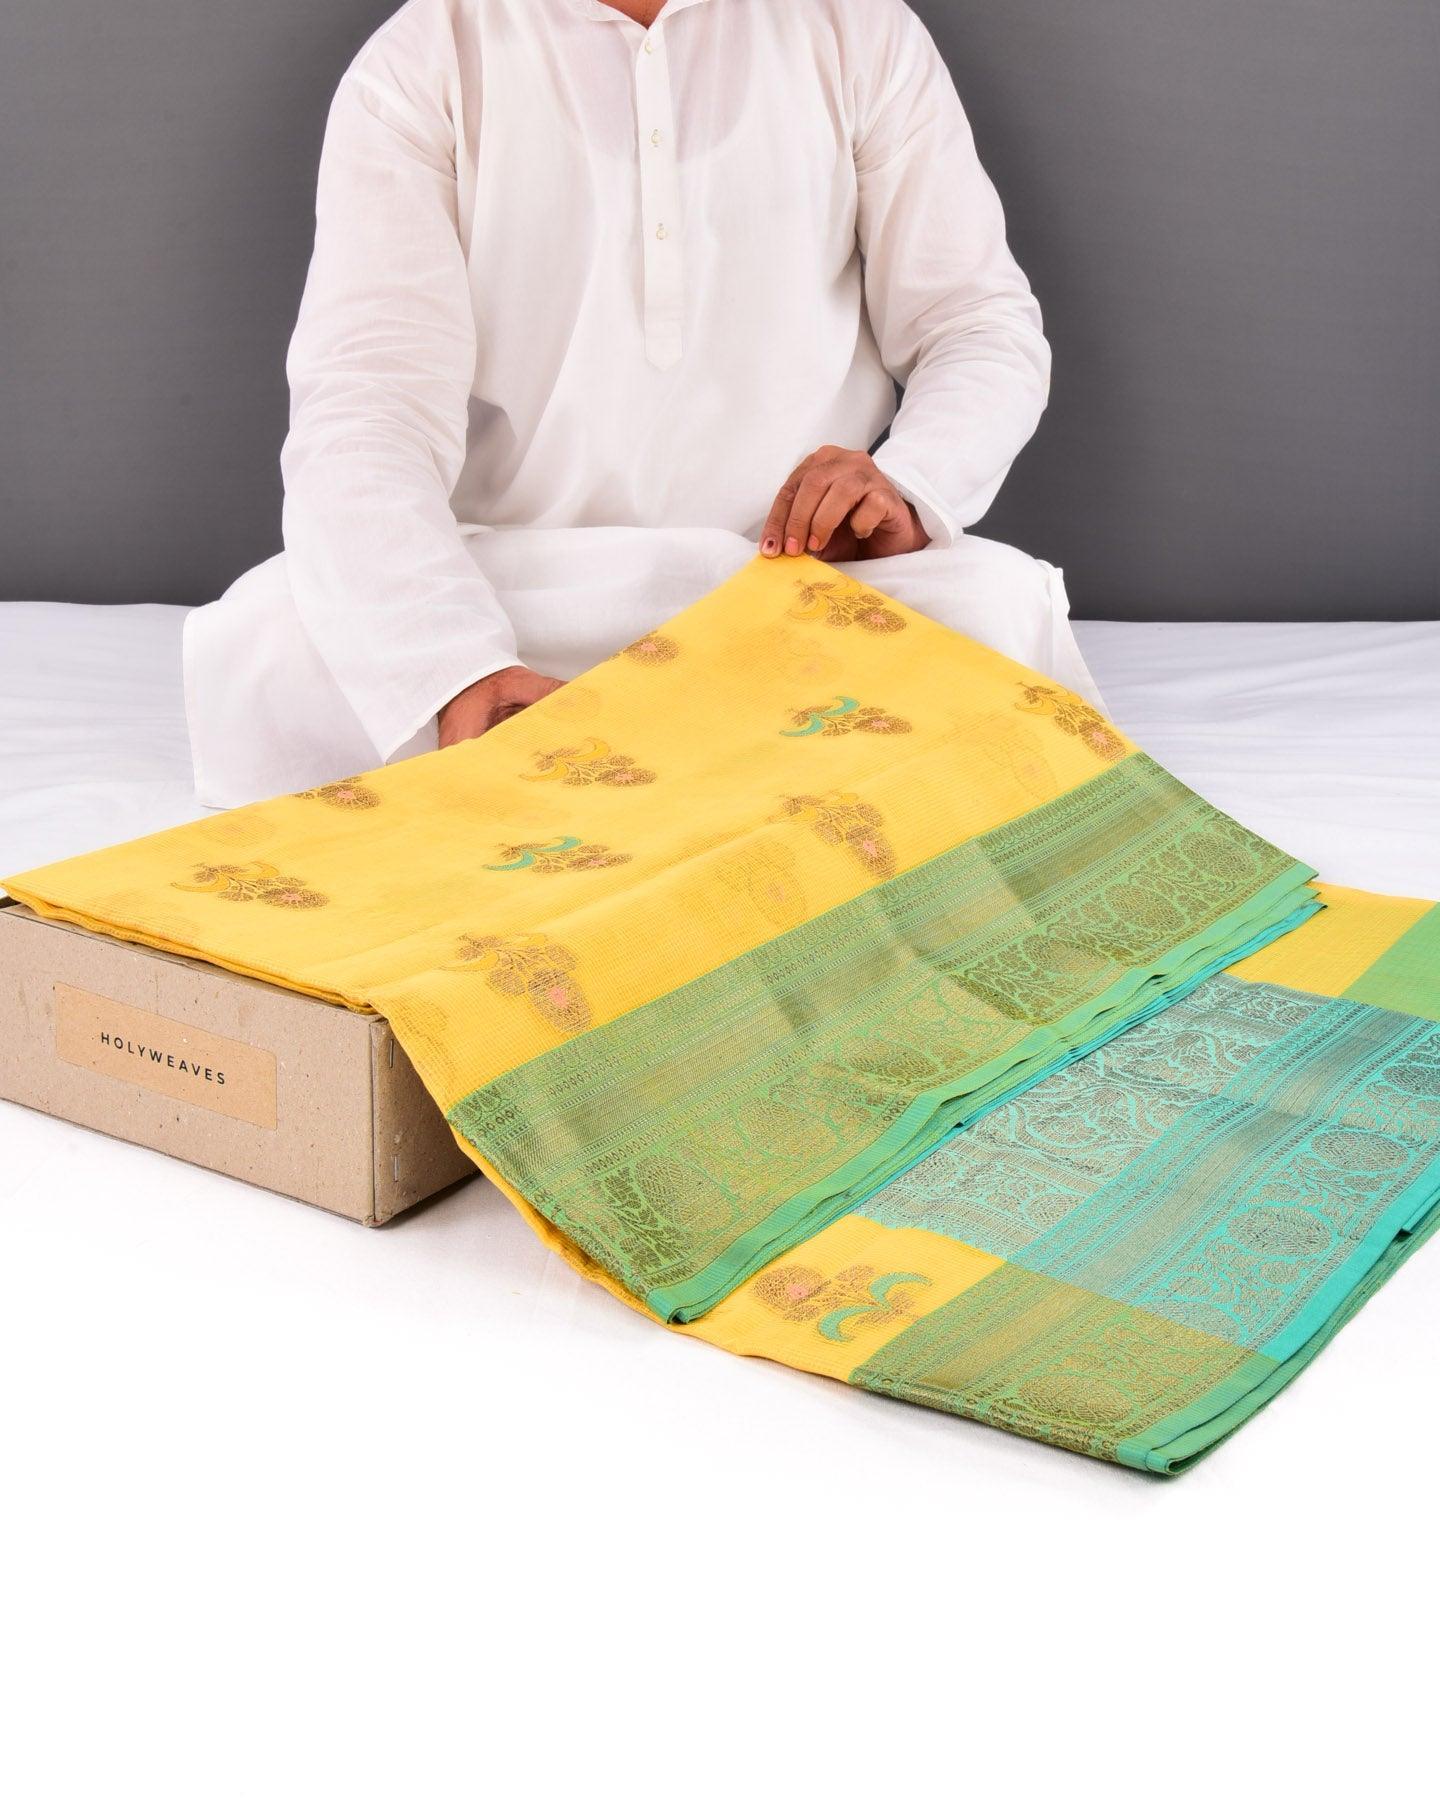 Yellow Banarasi Check Texture Antique Zari Buta Cutwork Brocade Woven Cotton Silk Saree with Contrast Green Border Pallu - By HolyWeaves, Benares